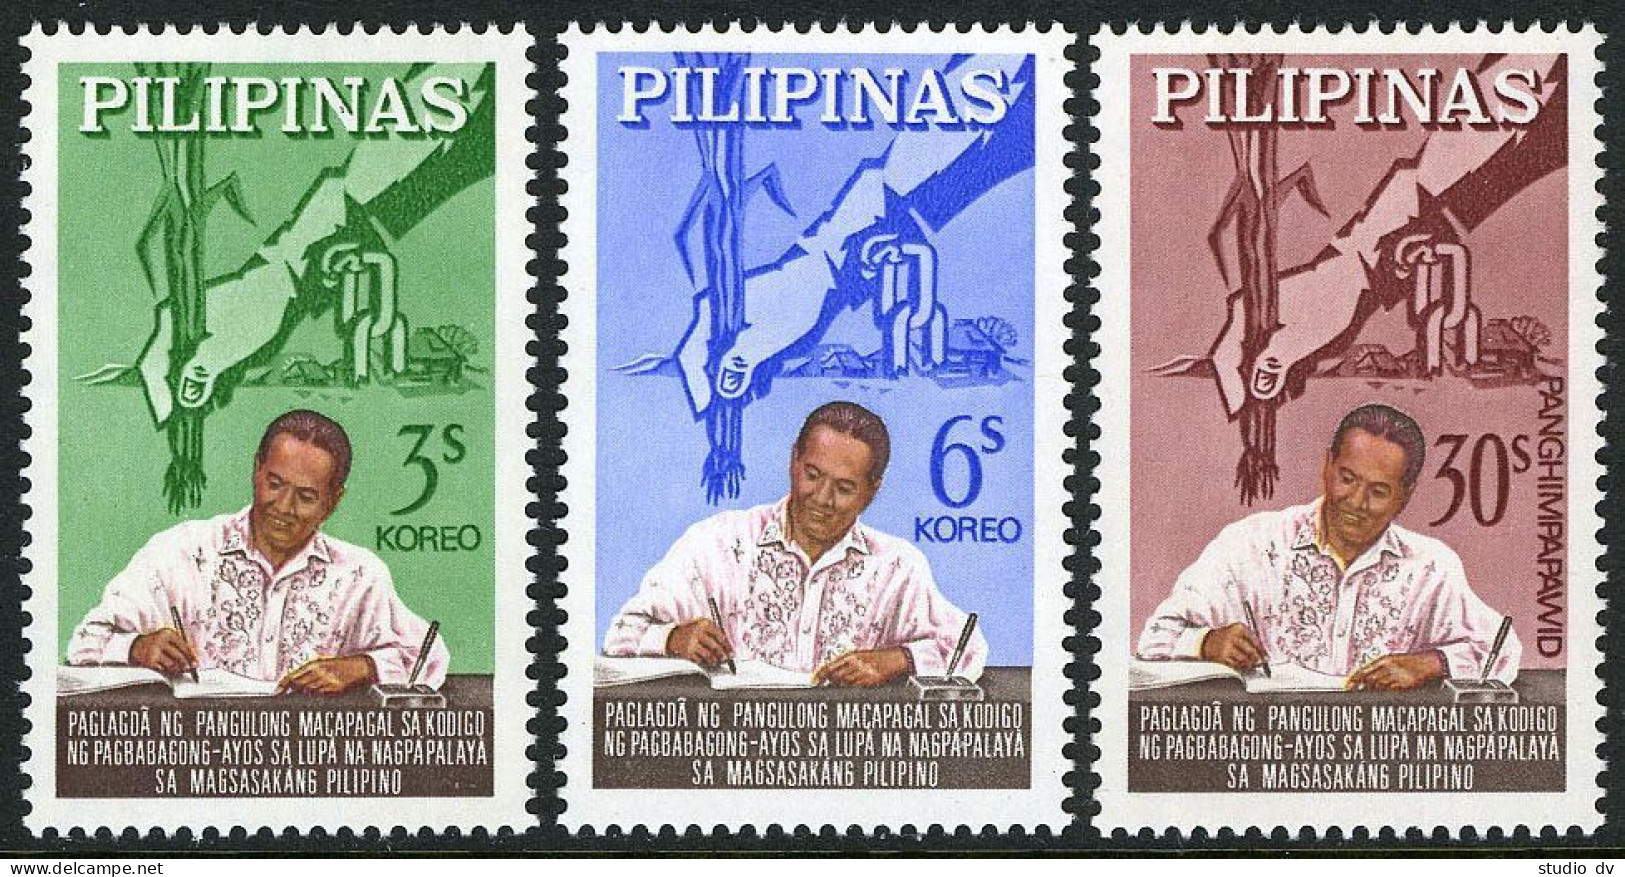 Philippines 912-913,C90,MNH.Michel 759-761. Agricultural Land Reform Code,1964. - Filippijnen